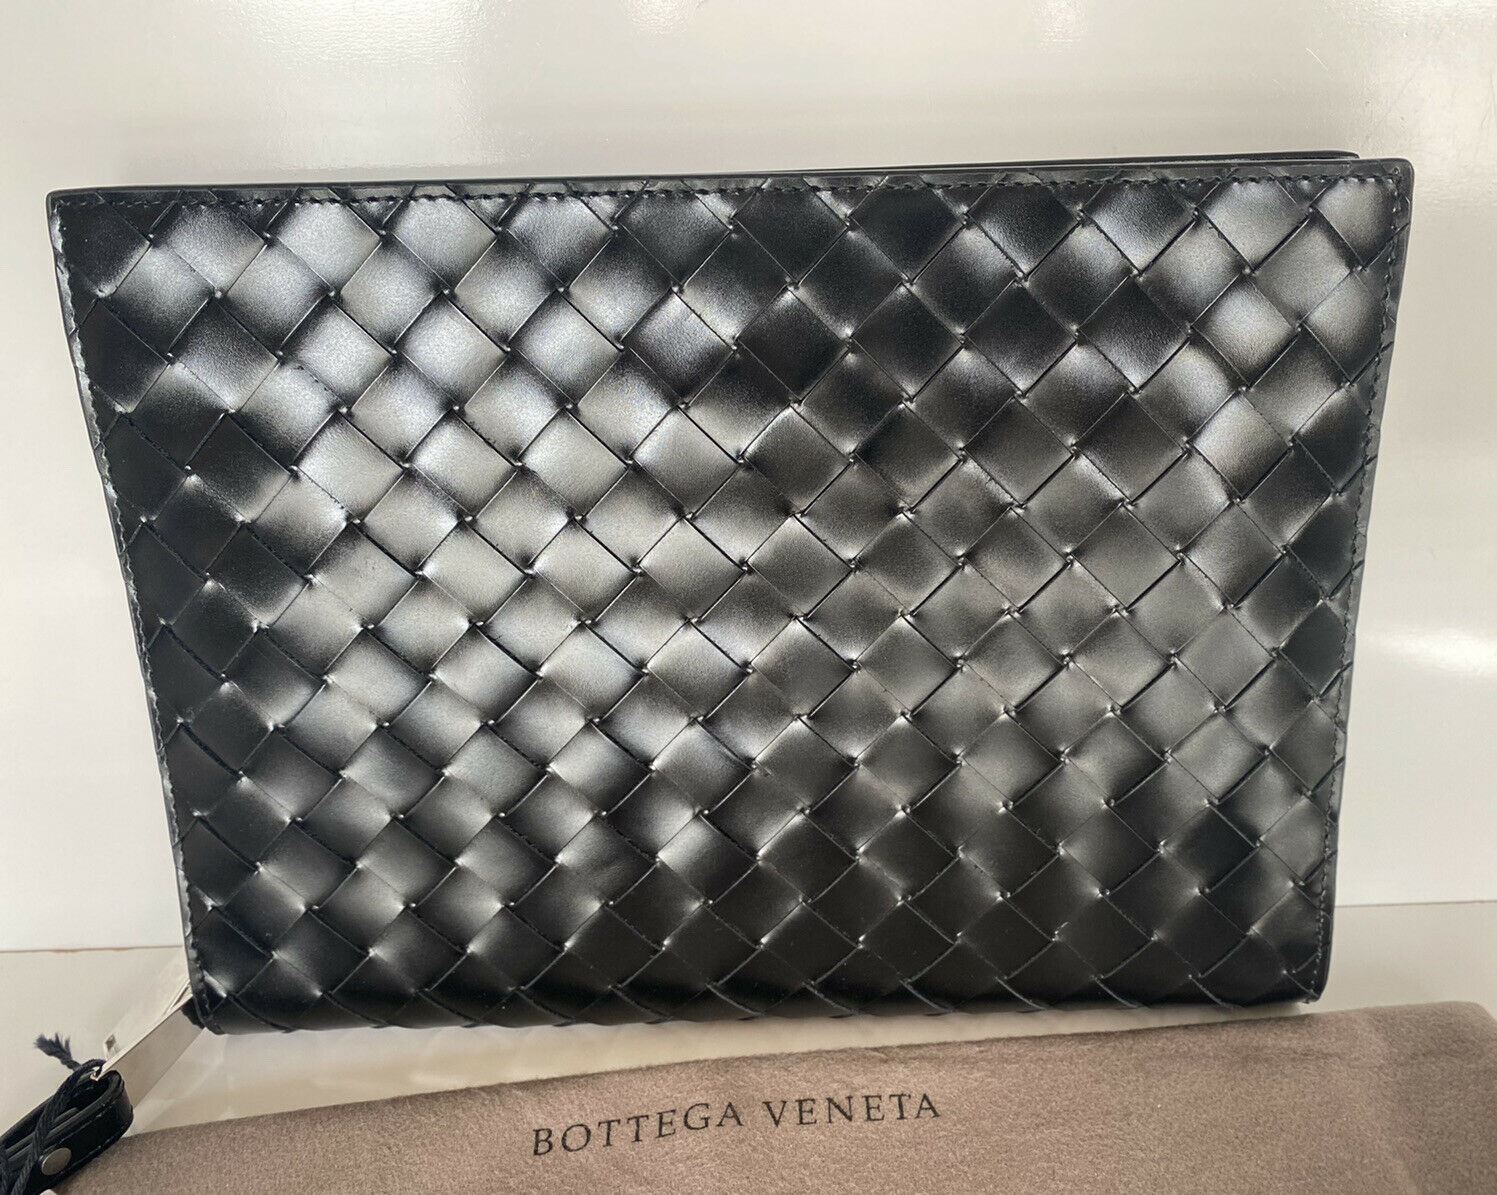 NWT $1650 Bottega Veneta Intrecciato Блестящий кожаный футляр для документов, черный 592855 